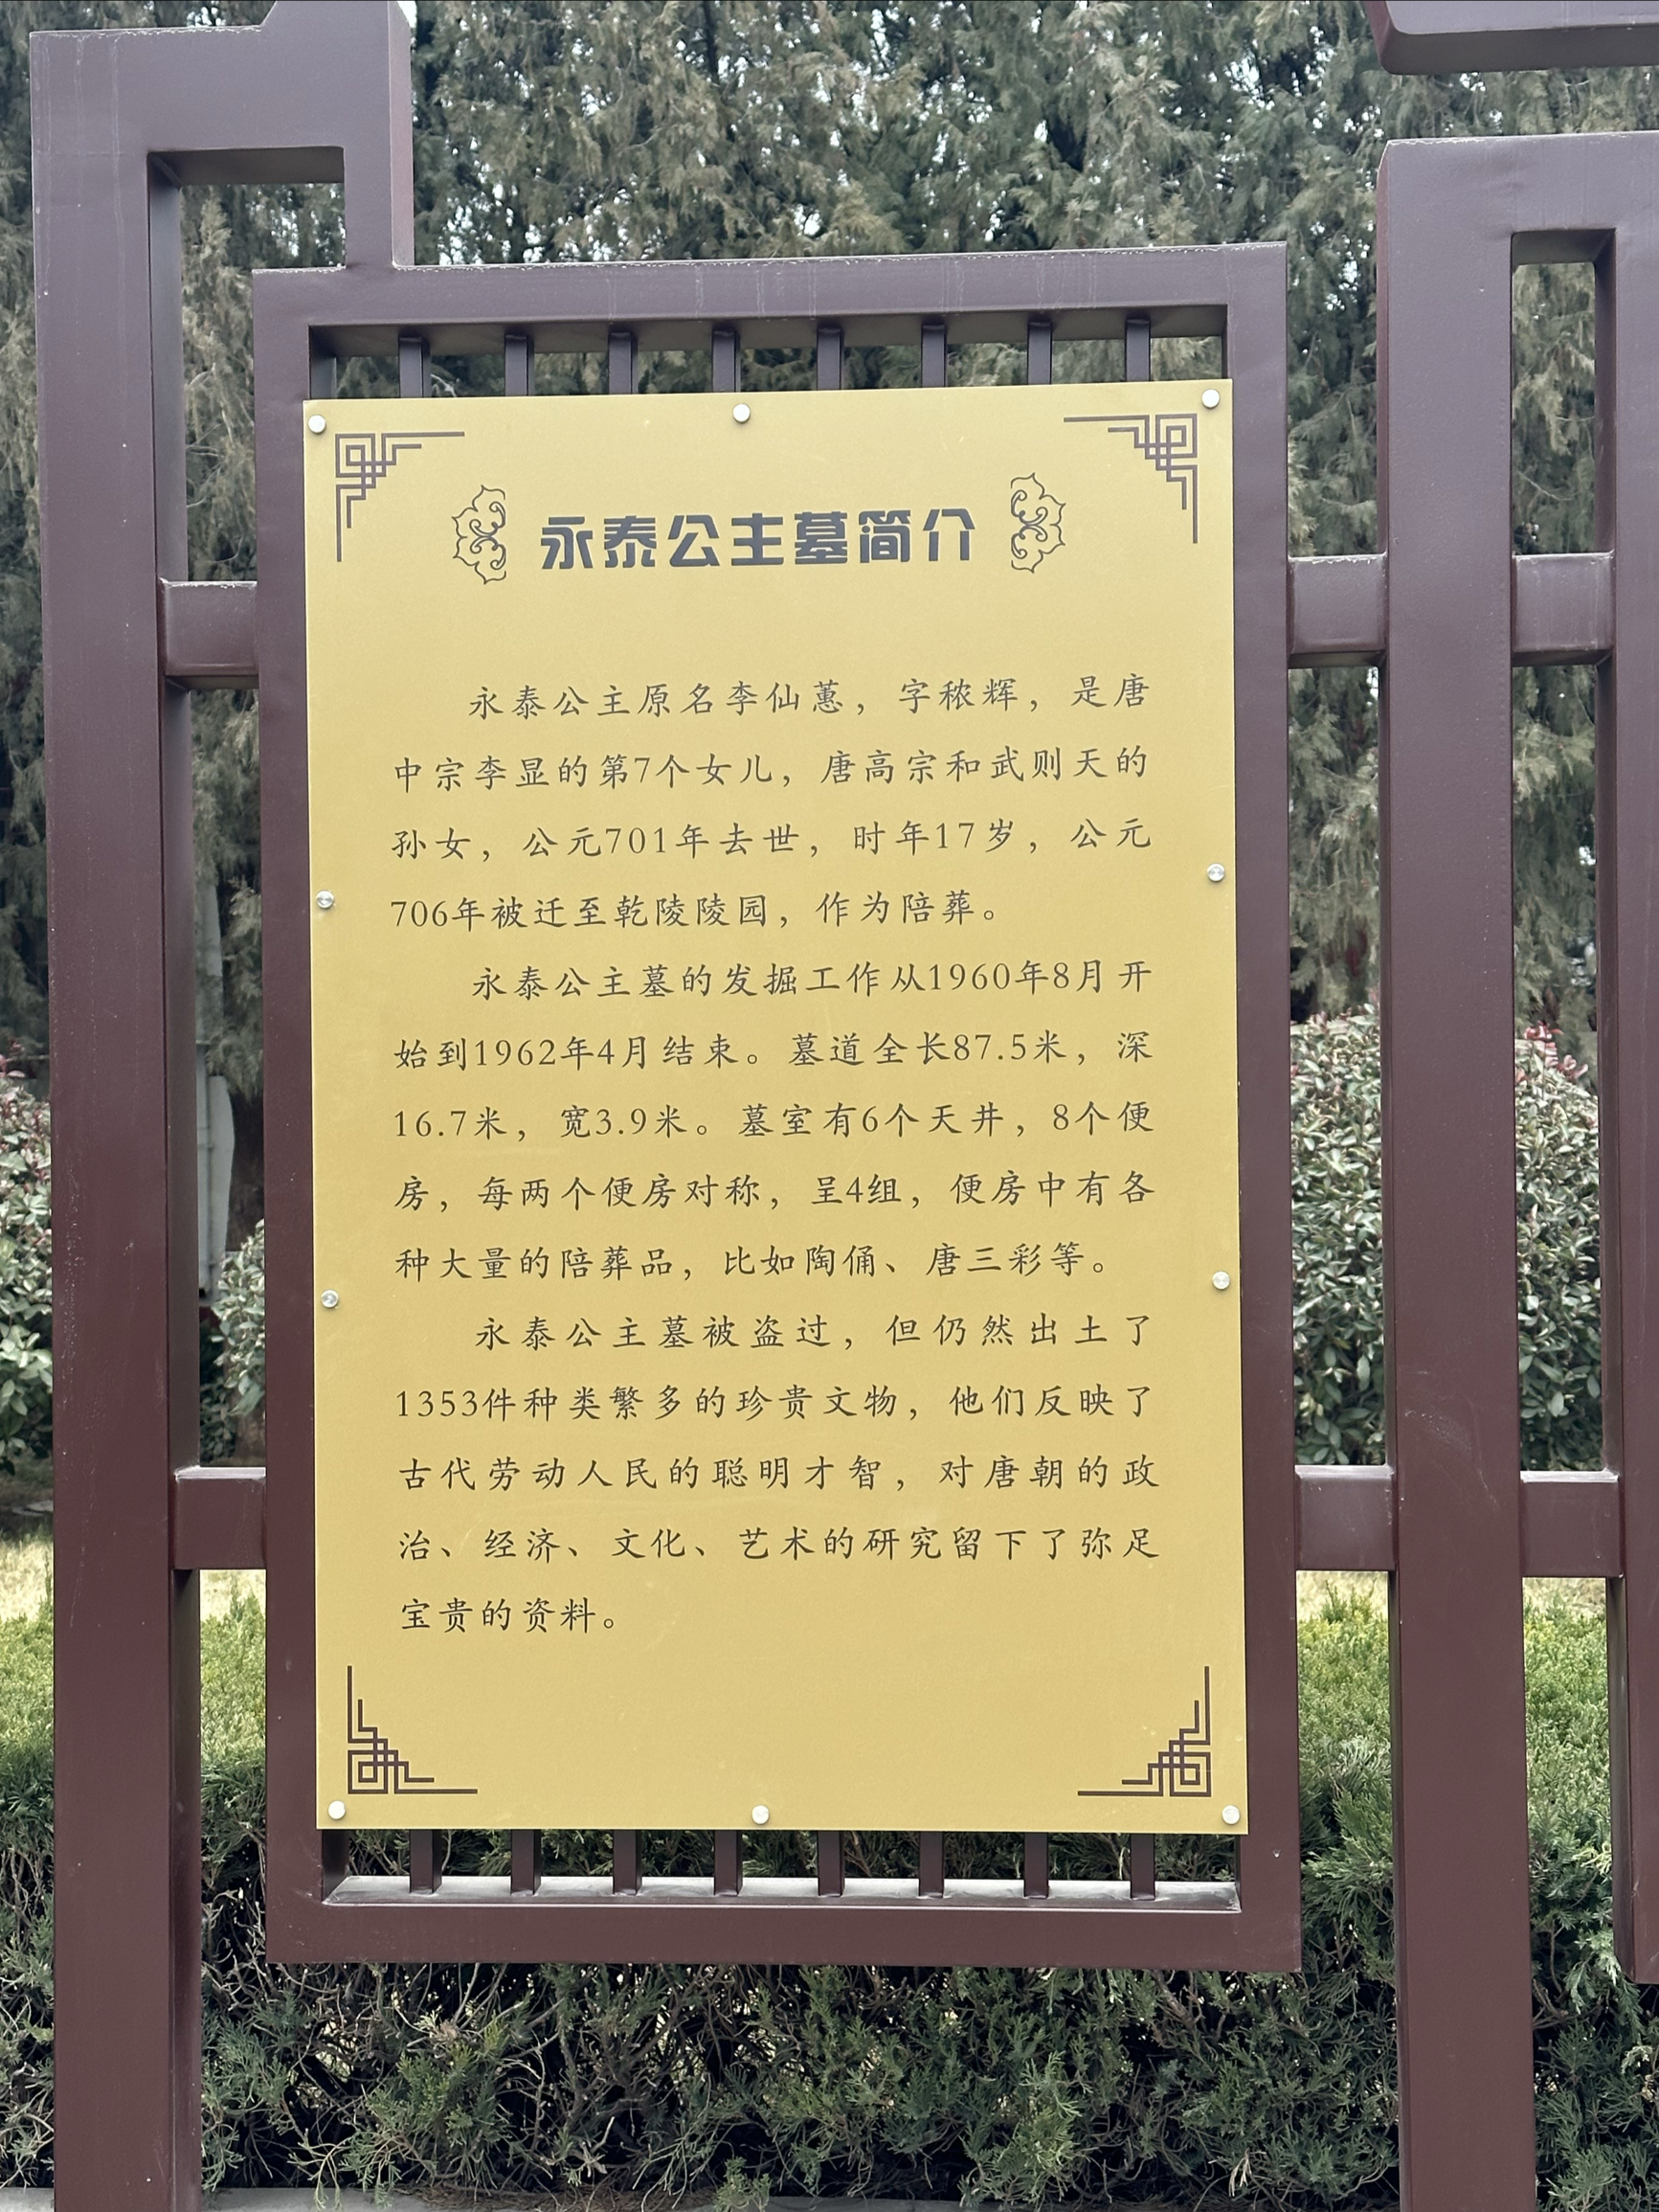 去陕西旅游，这一站来到了咸阳市，去乾陵参观。永泰公主墓是17个陪葬墓的其中一个，墓棺是双人的，与她丈